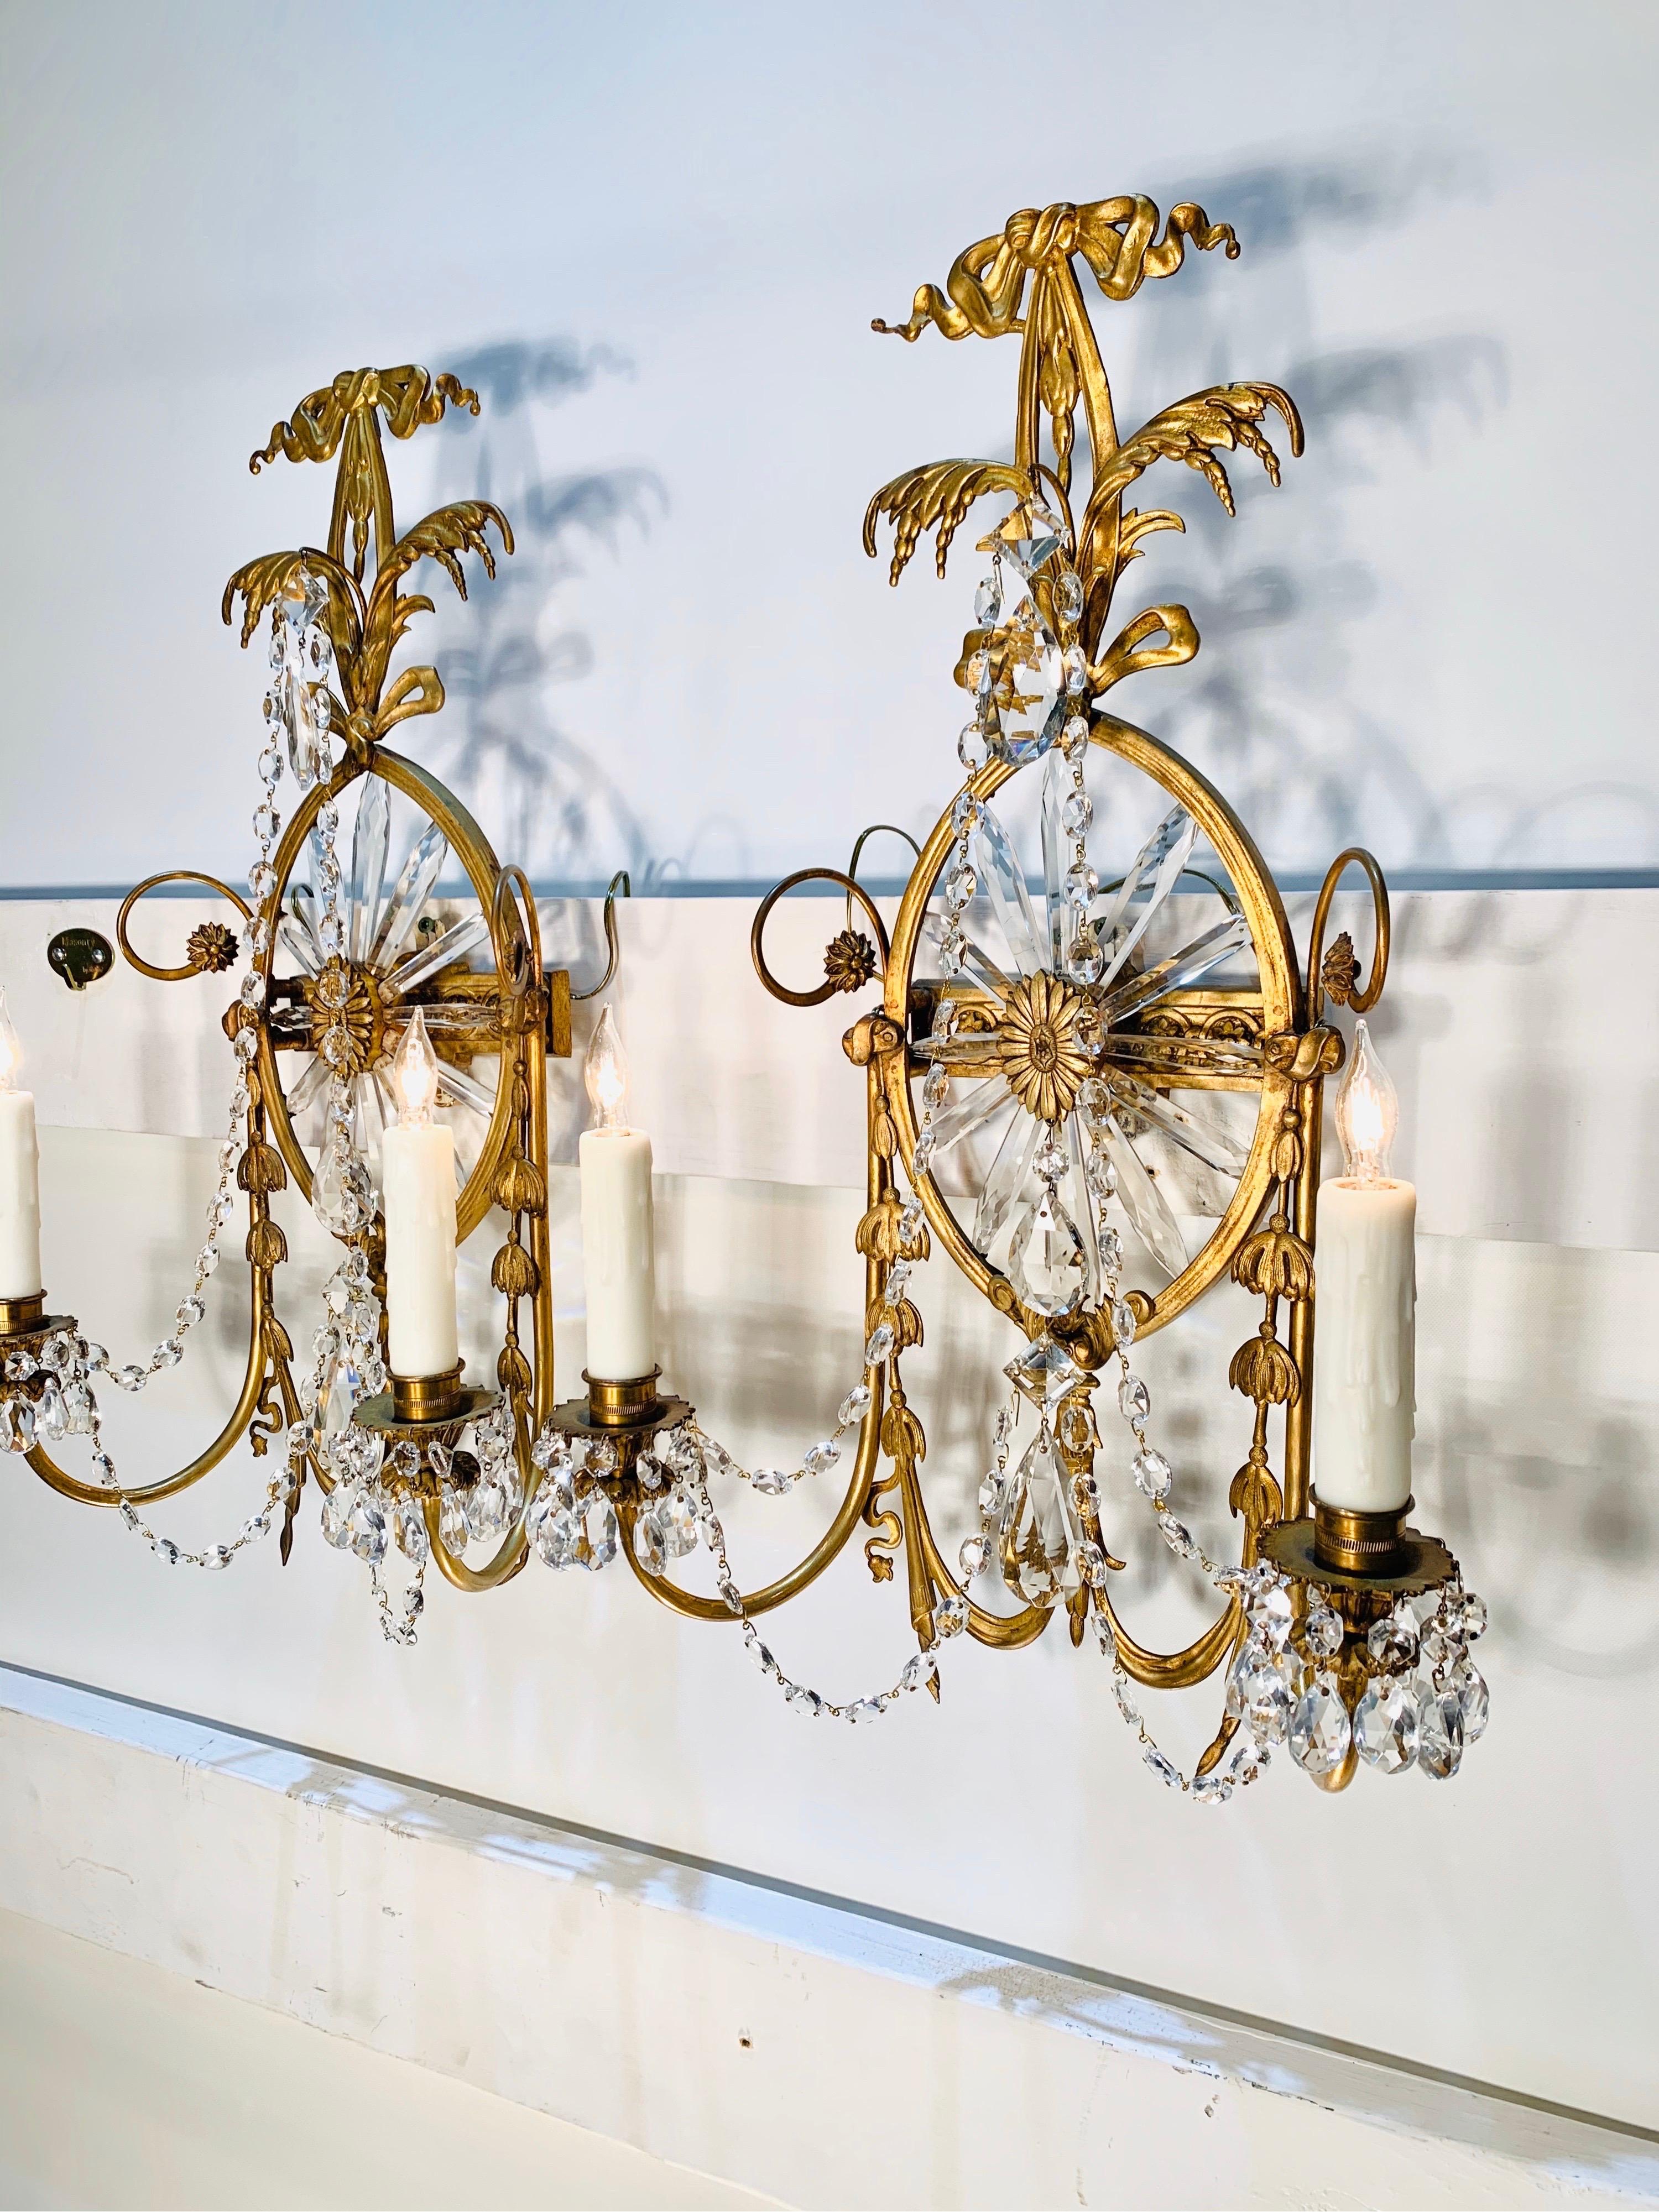 Großartiges Paar Caldwell Scones mit elegantem Sonnenschliff aus Kristall und feinem neoklassizistischen Bronzerahmen. Dieses Paar von Wandleuchtern hat zwei Kerzenarme und ist im Stil von Robert Adam gehalten.